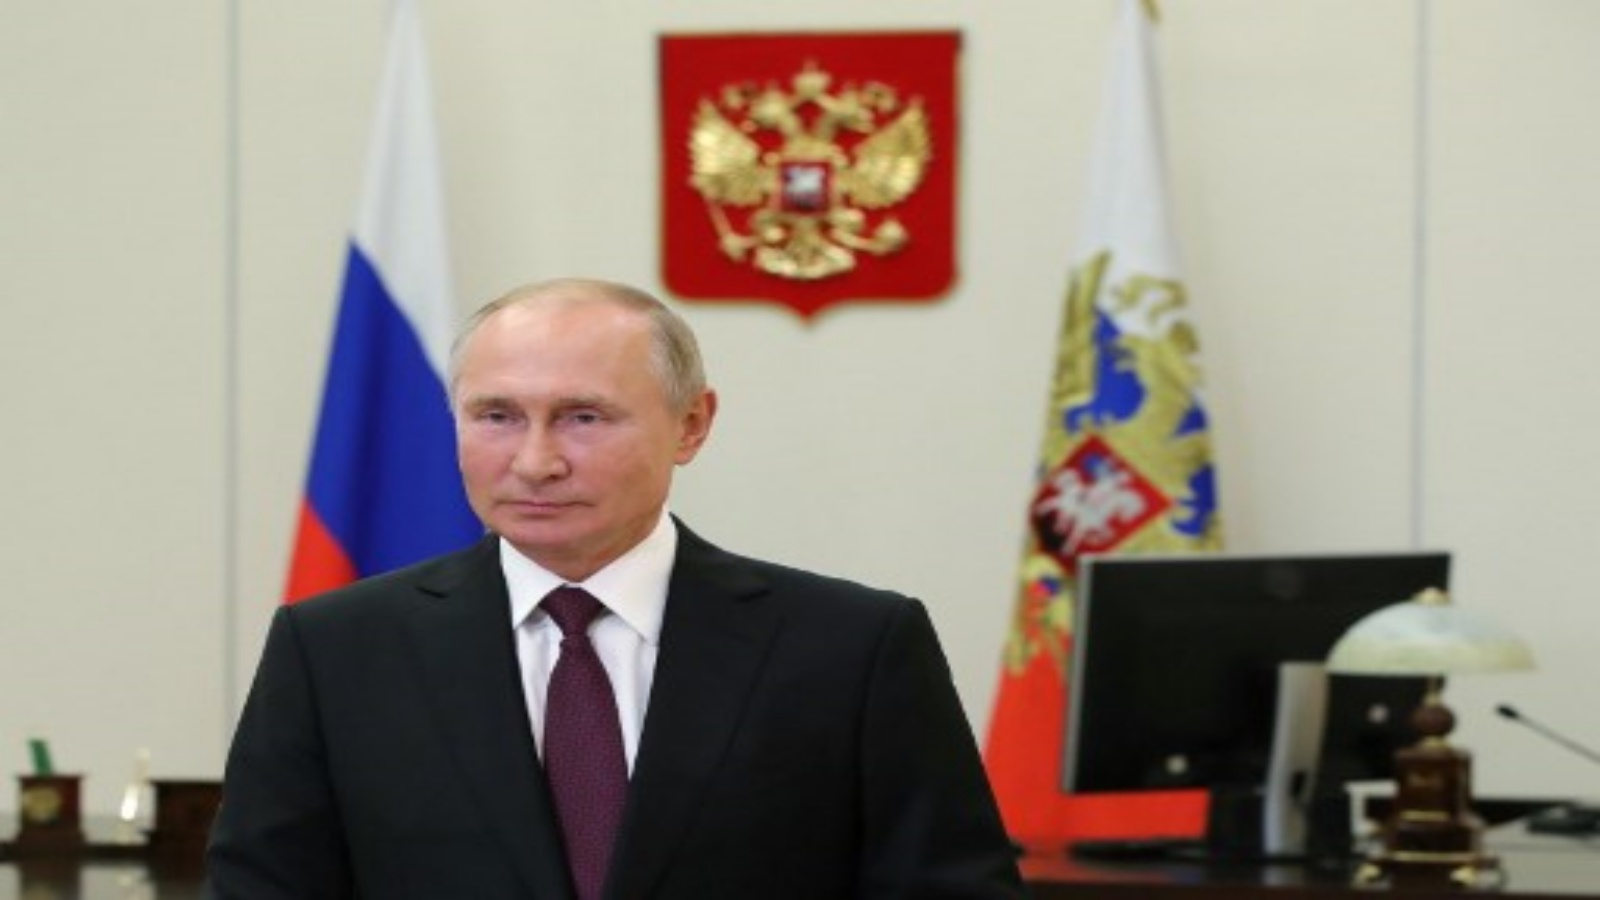 الرئيس الروسي فلاديمير بوتين يخاطب المشاركين في المنتدى السابع لأقاليم روسيا وبيلاروسيا عبر بث الفيديو في مقر إقامة نوفو-أوغاريوفو الحكومي ، خارج موسكو ، في 29 سبتمبر 2020. أ ف ب